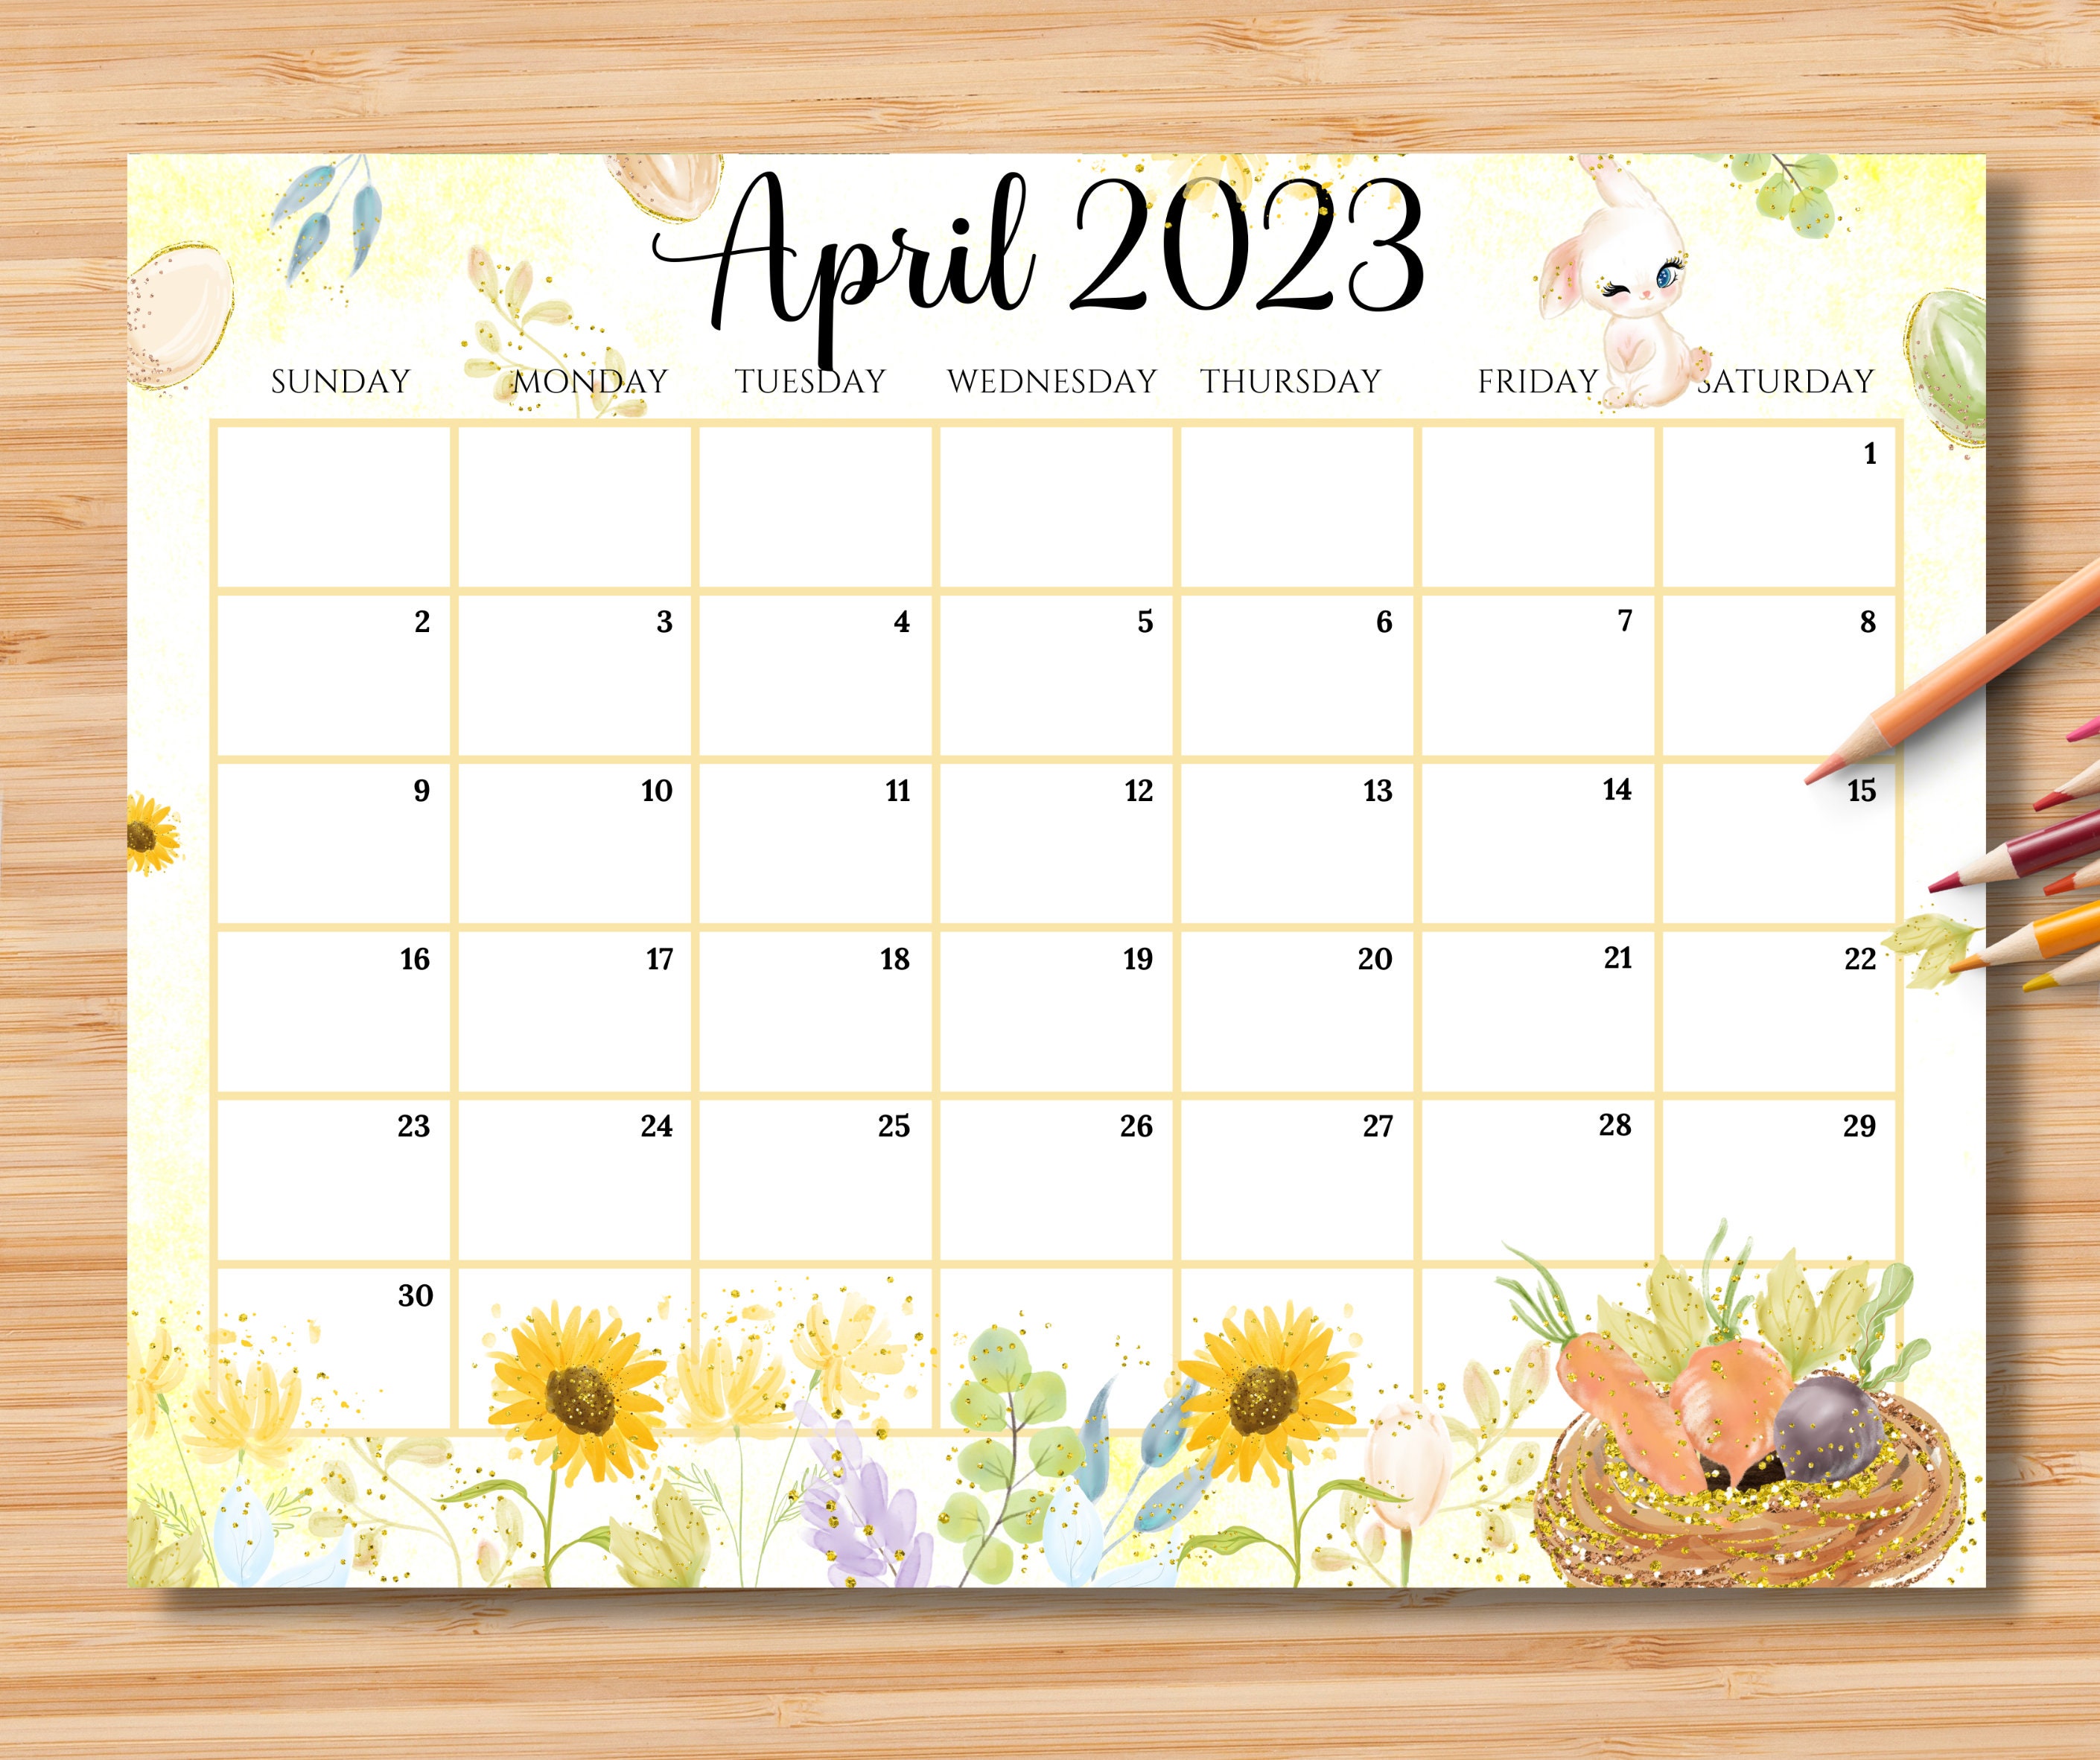 Calendar 2023 Easter Get Calendar 2023 Update